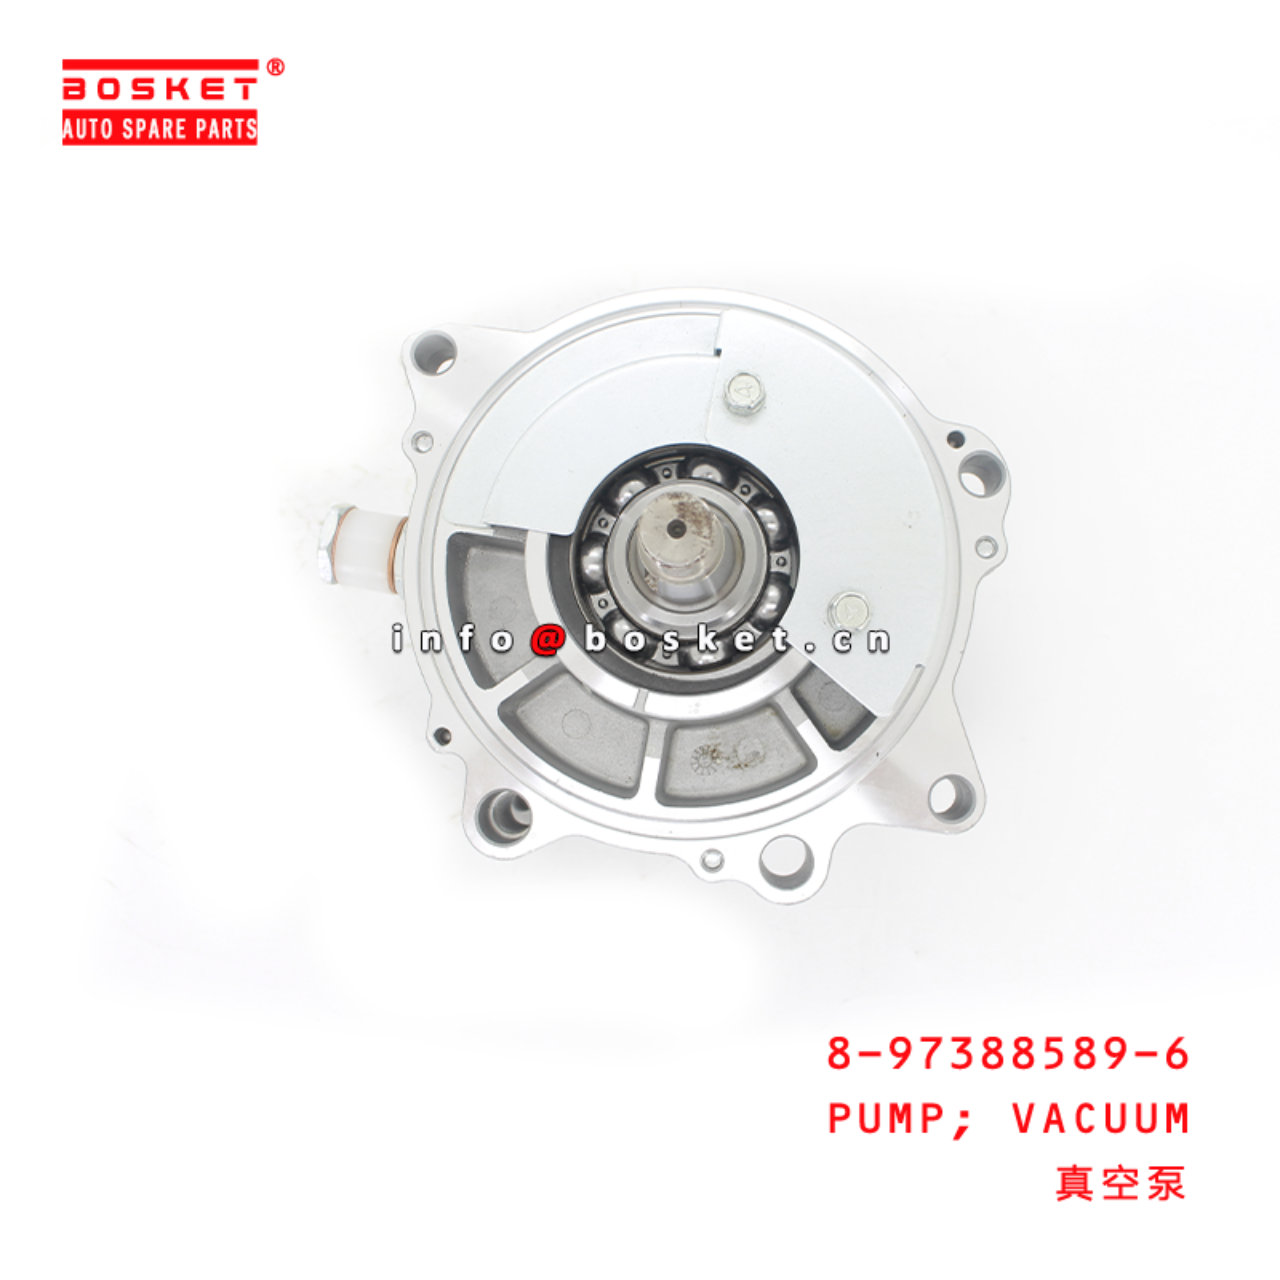 8-97388589-6 Dcm Sply Def Pump Assembly Suitable for ISUZU 700P 4HK1 8973885896